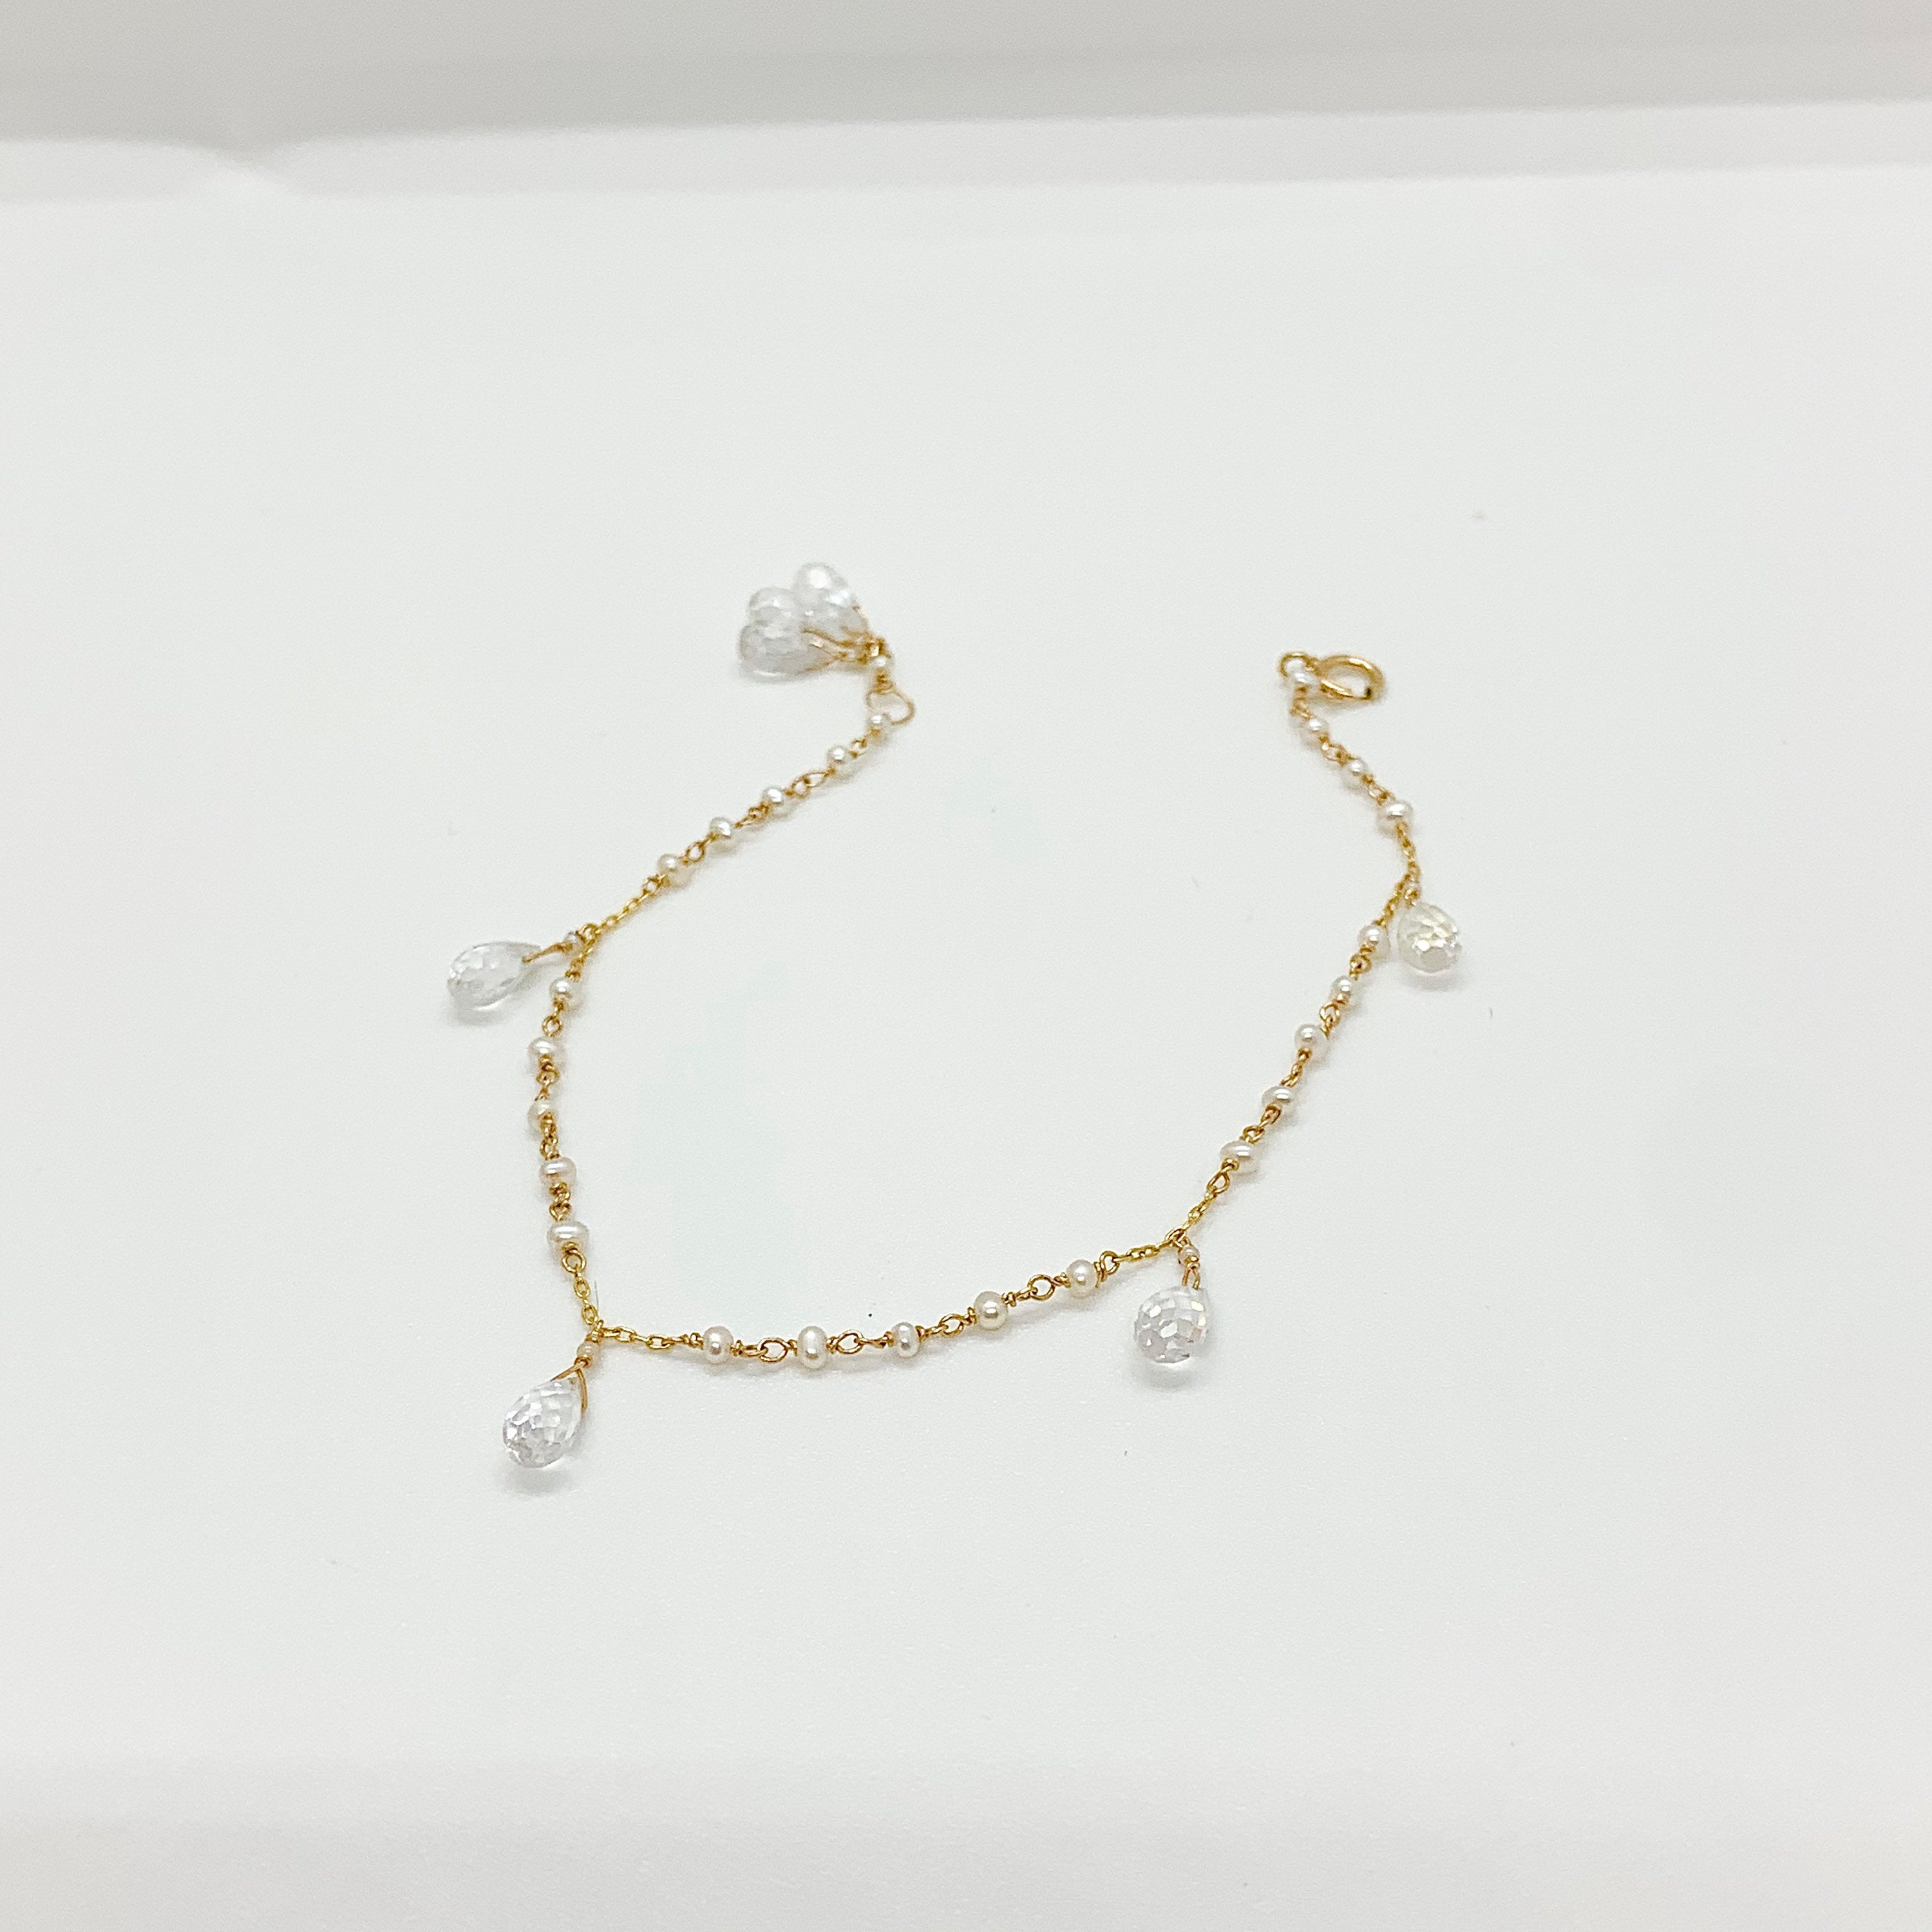 14K GOLD BRACELET - Moonstone Bracelet - Yellow Gold Bracelet - Freshwater Pearls - Gold Chain Bracelet